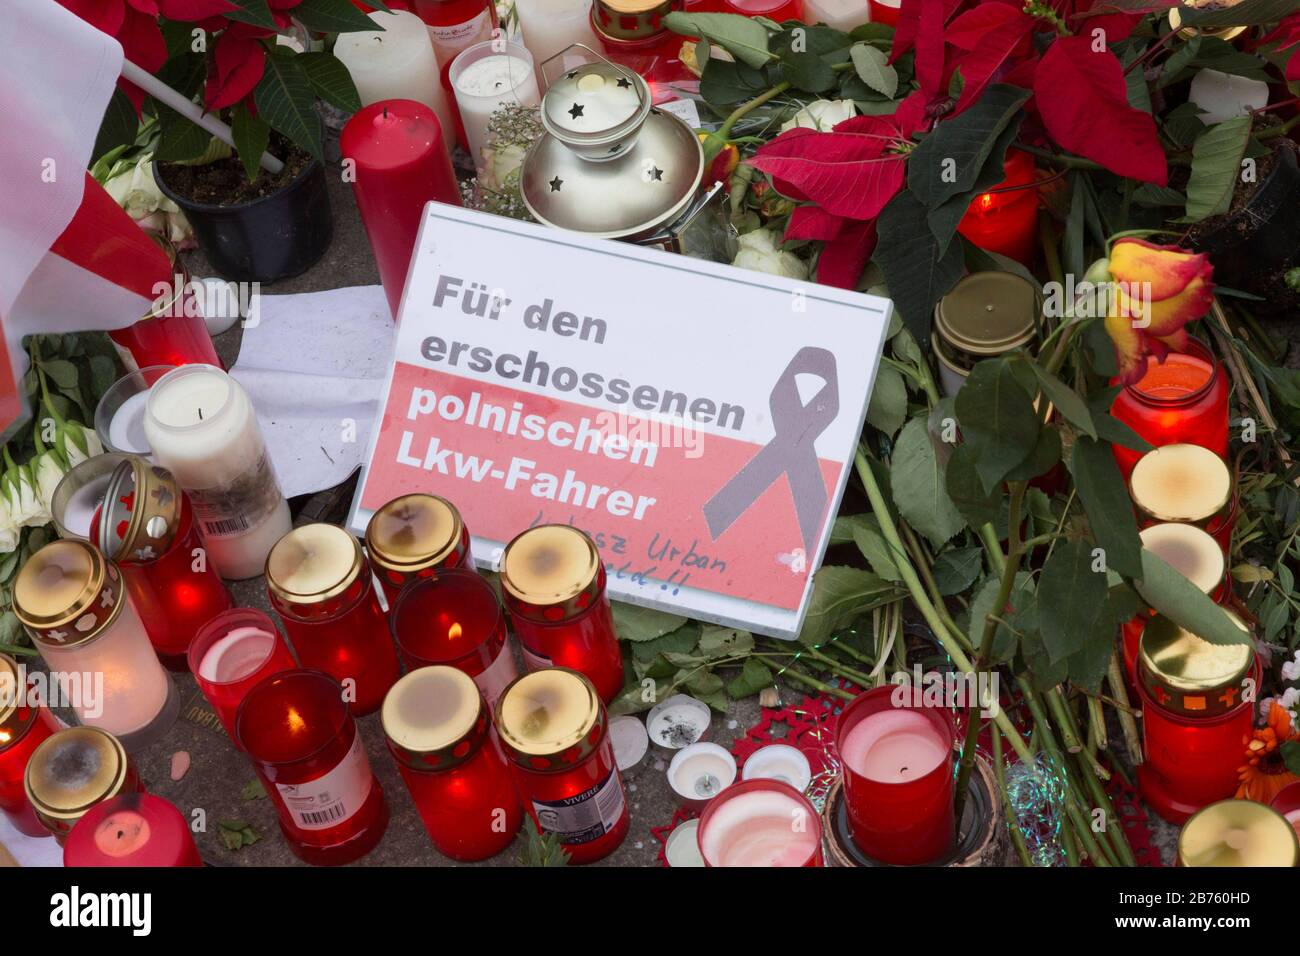 Ein Schild mit der Aufschrift "für den erschossenen polnischen Autofahrer" liegt inmitten von Kerzen und Blumen an der Stelle, an der am 19.12.16 nach einem Terro-Angriff mit einem Lastwagen 12 Menschen starben. Der Weihnachtsmarkt wurde wieder eröffnet, 23.12.2016 [automatisierte Übersetzung] Stockfoto